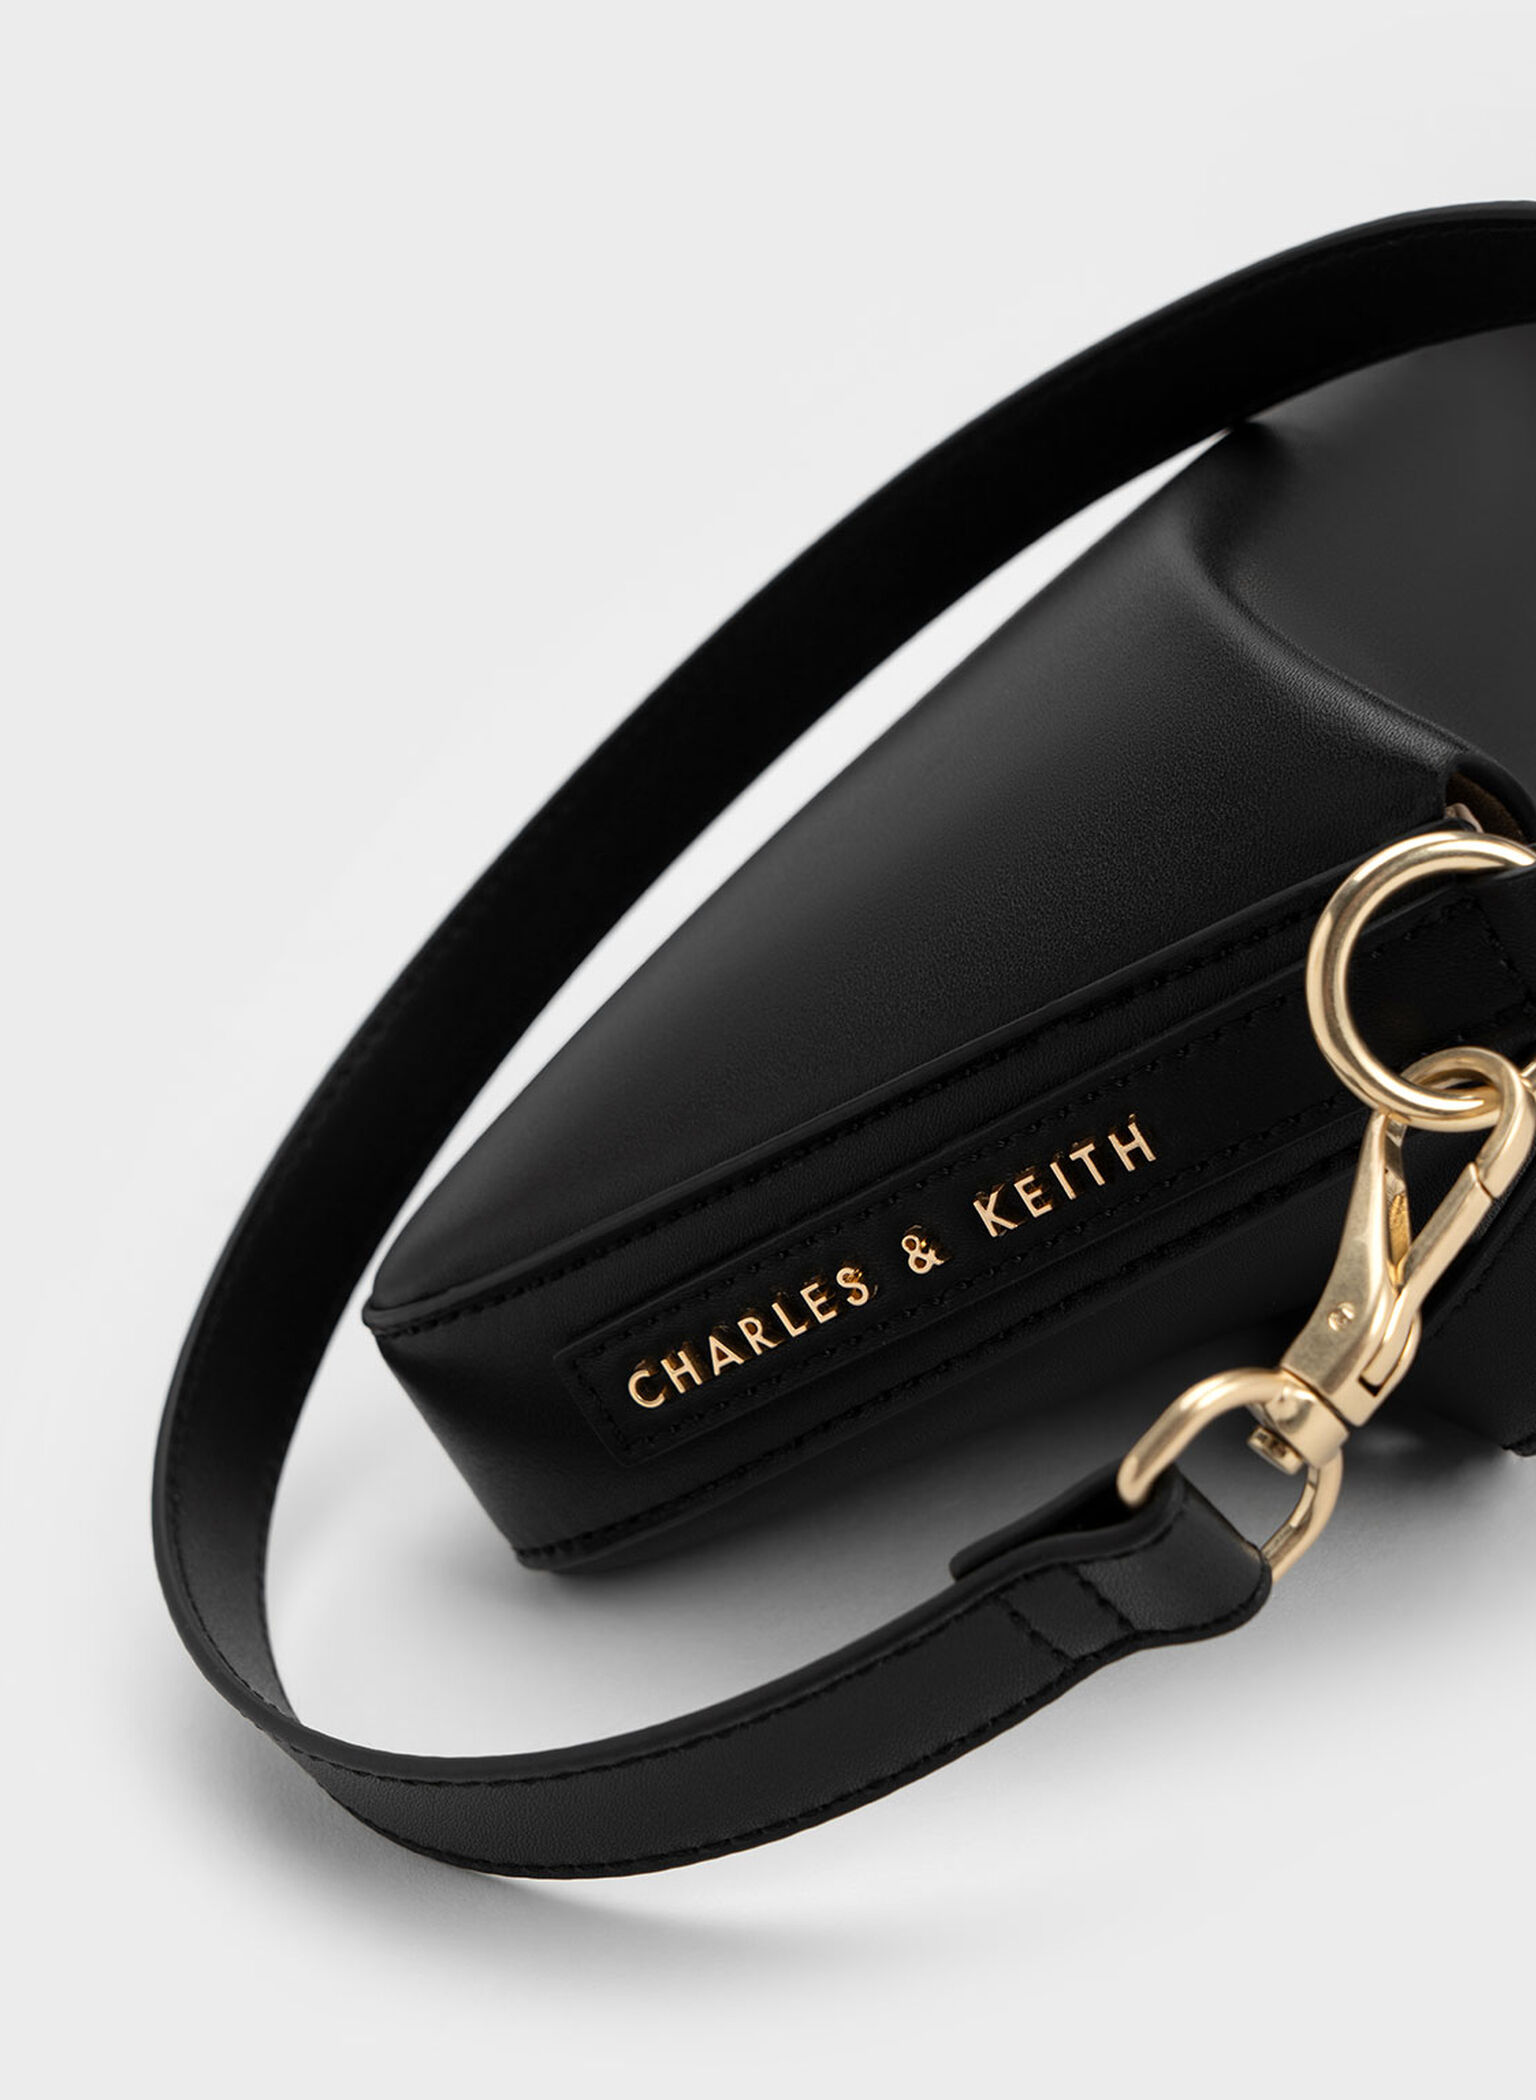 Catena Chain-Handle Bag, Black, hi-res